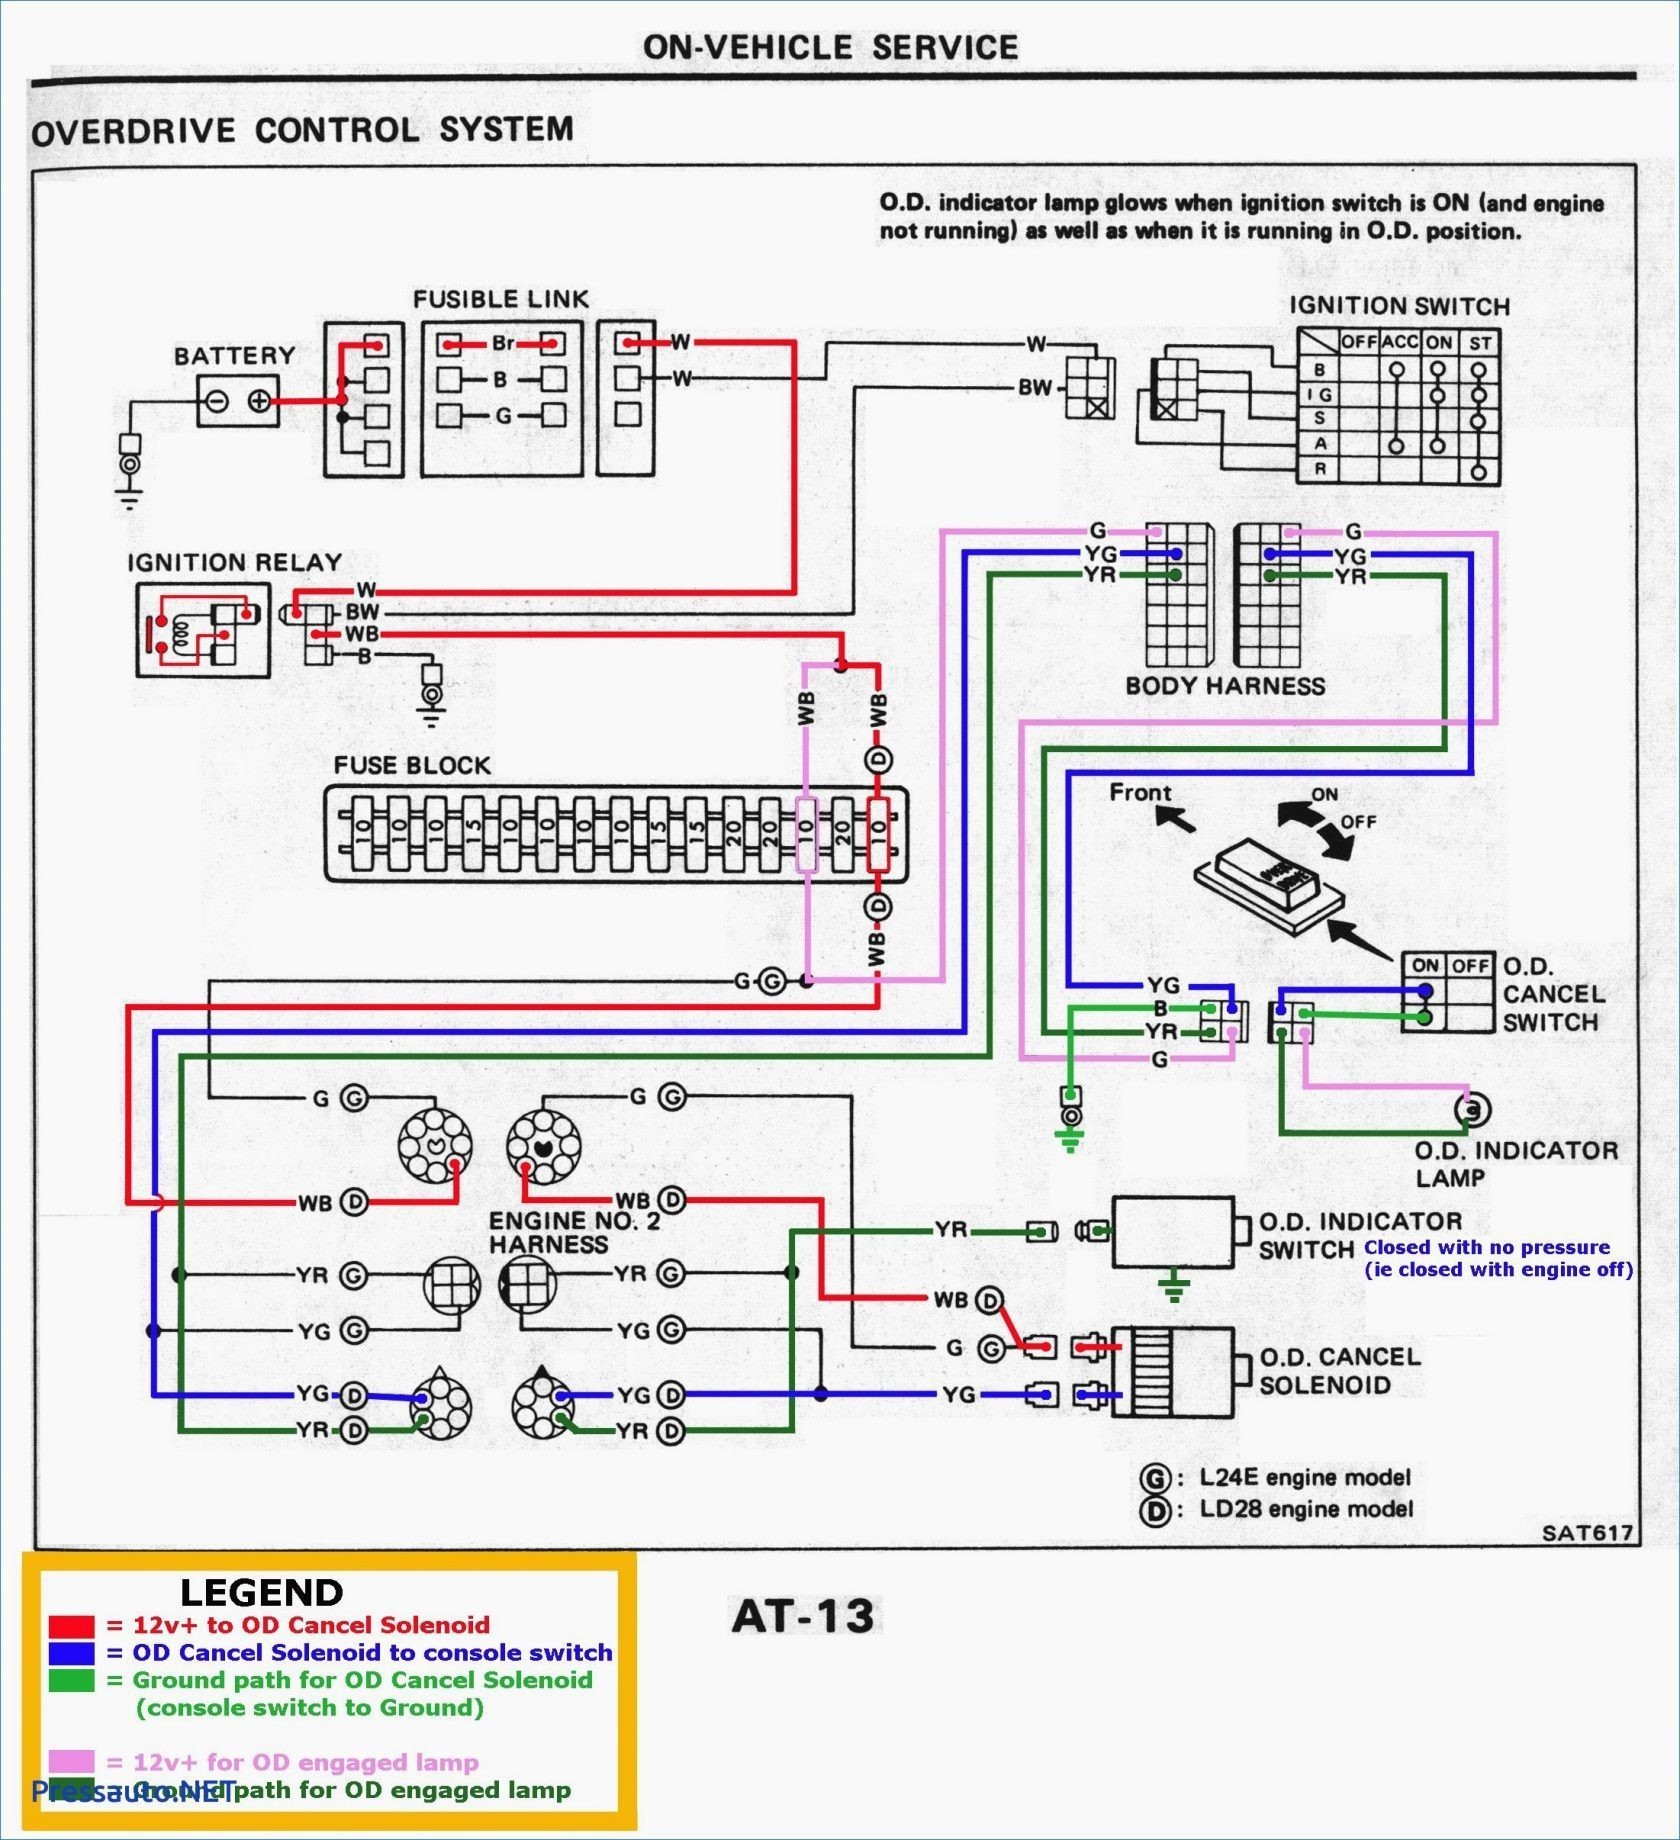 Honda Accord Parts Diagram 97 Honda Accord Engine Diagram Of Honda Accord Parts Diagram